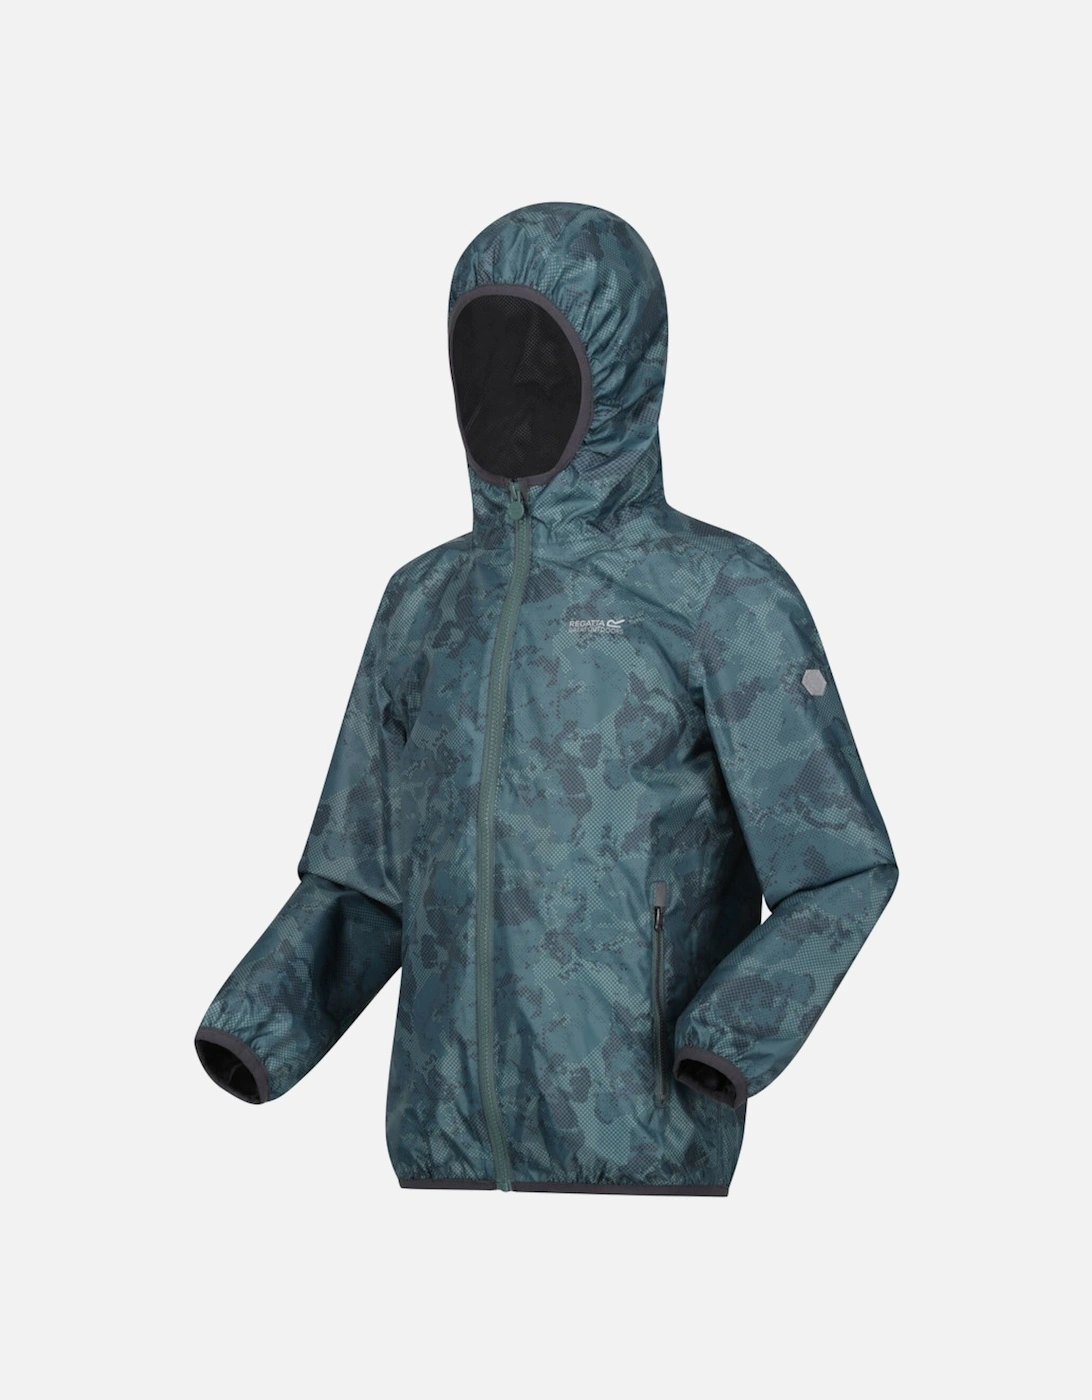 Boys & Girls Printed Lever Waterproof Breathable Jacket